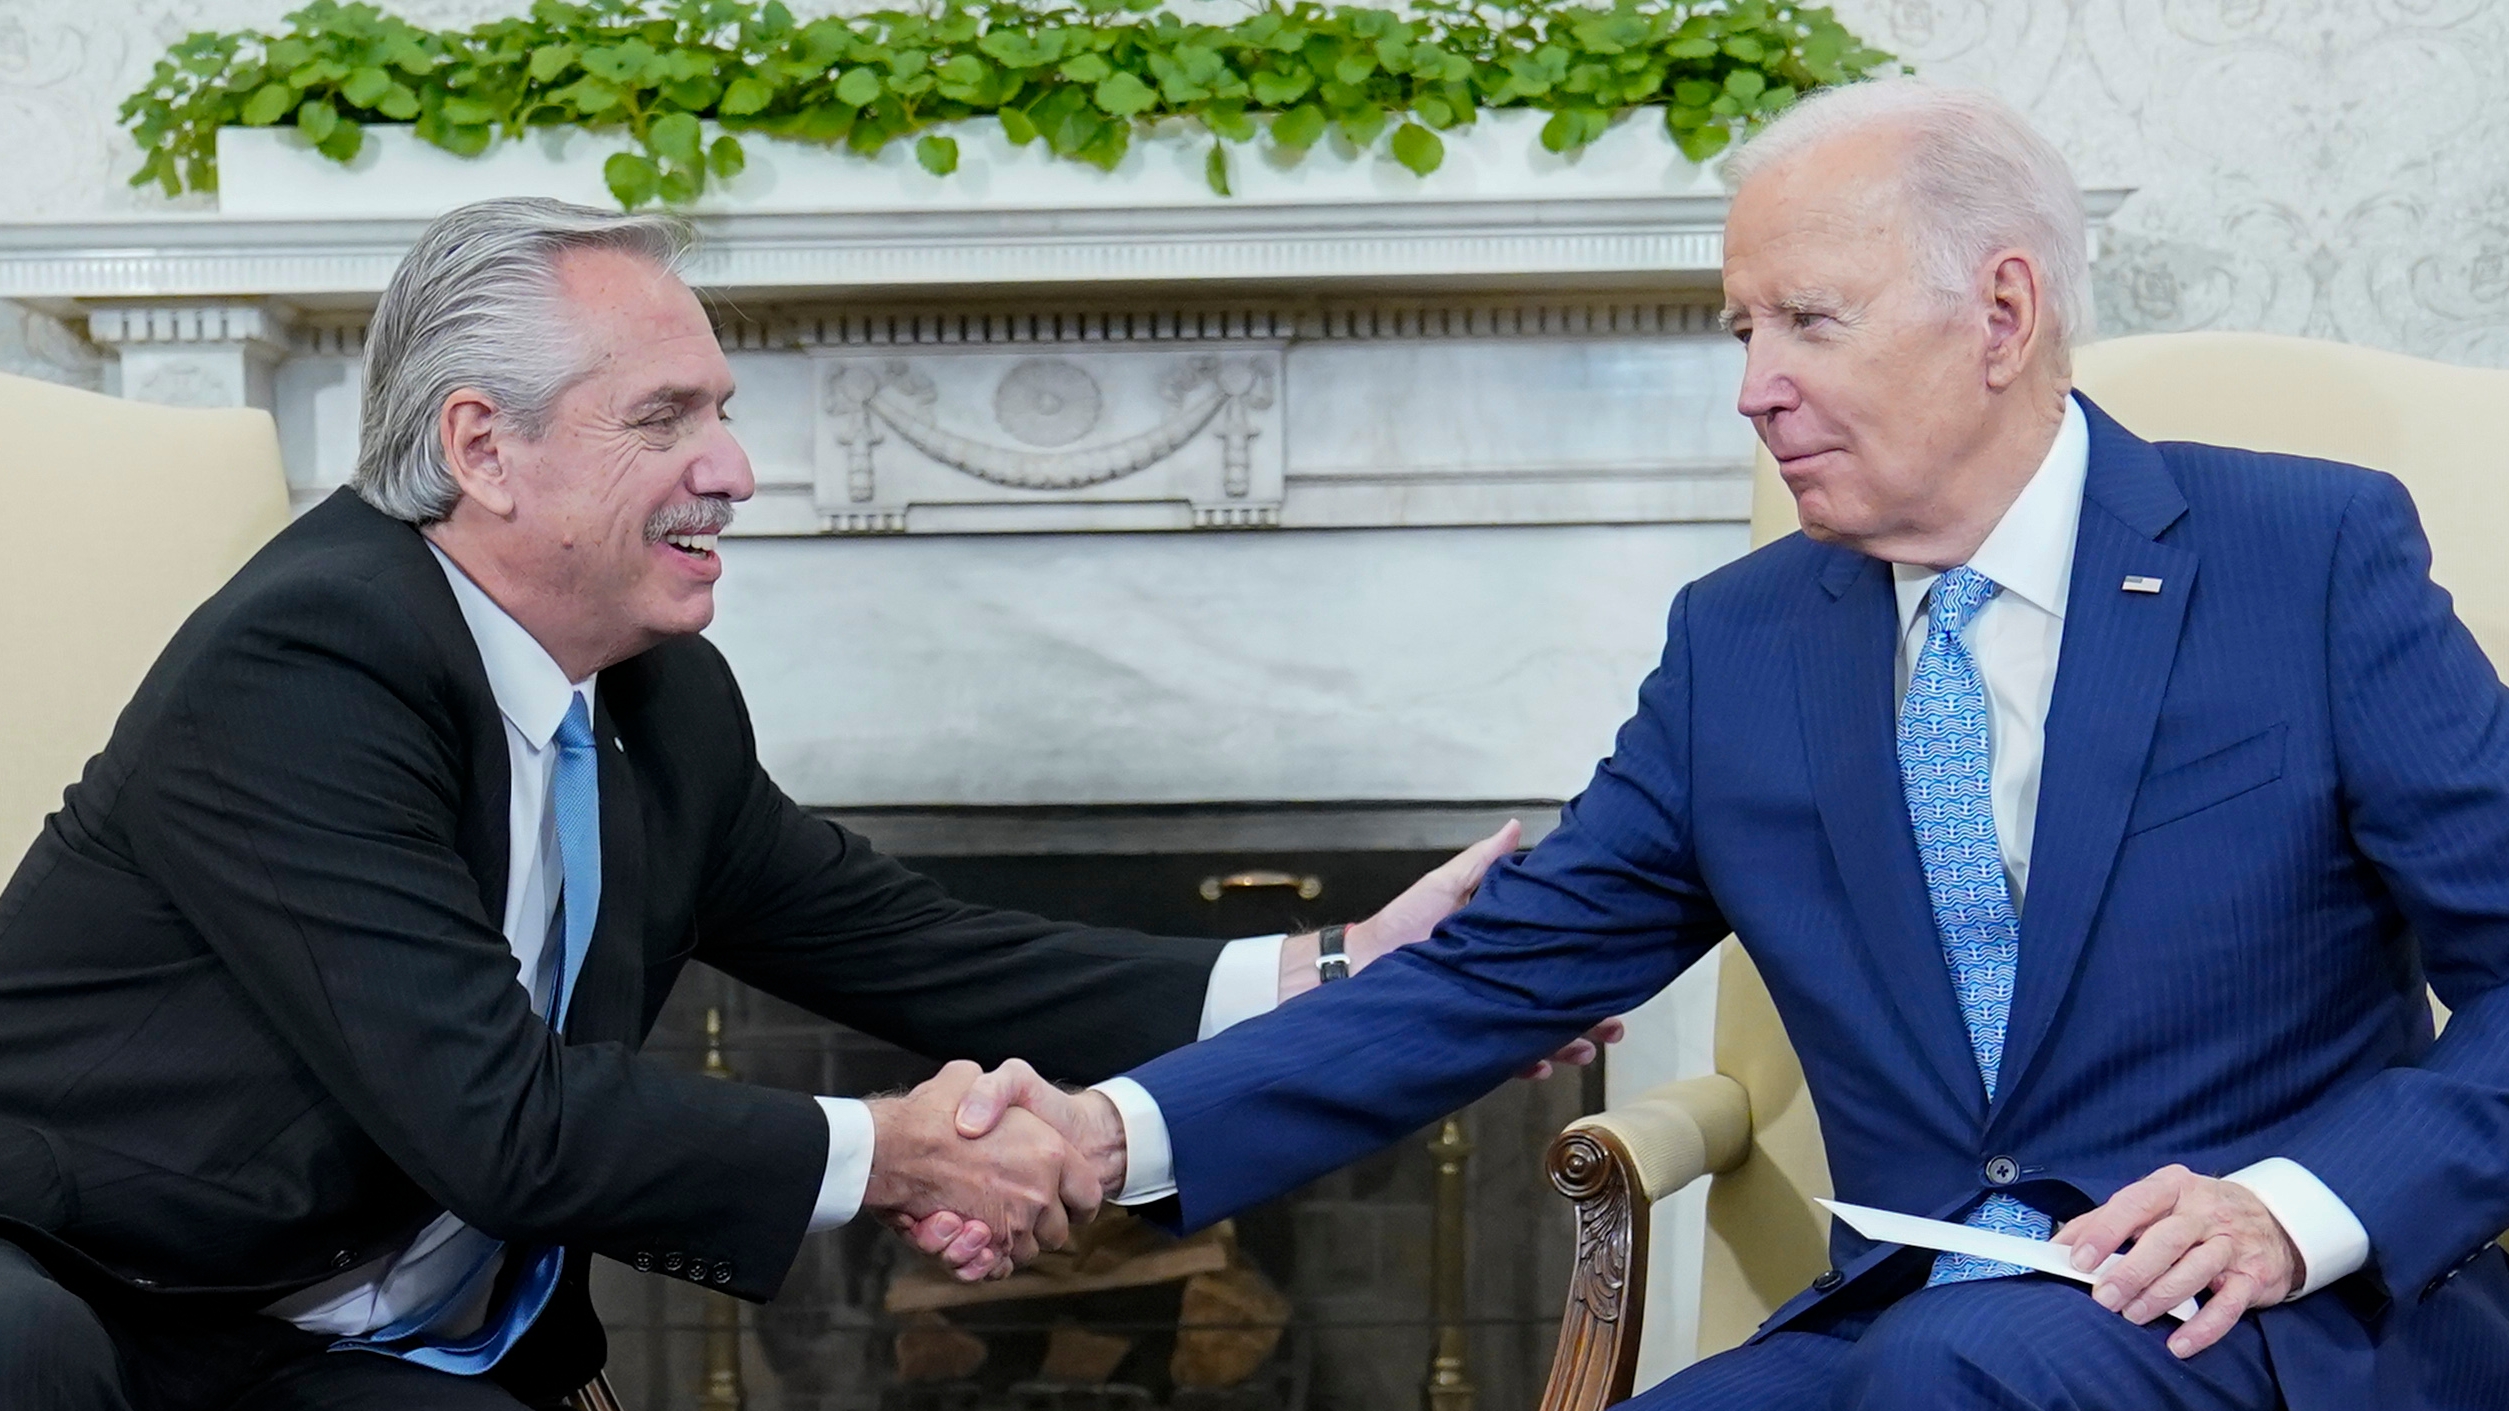 Alberto Fernández regresó al país, destacó la mirada “peronista” de Biden y afirmó: “Milei es una amenaza a la democracia”